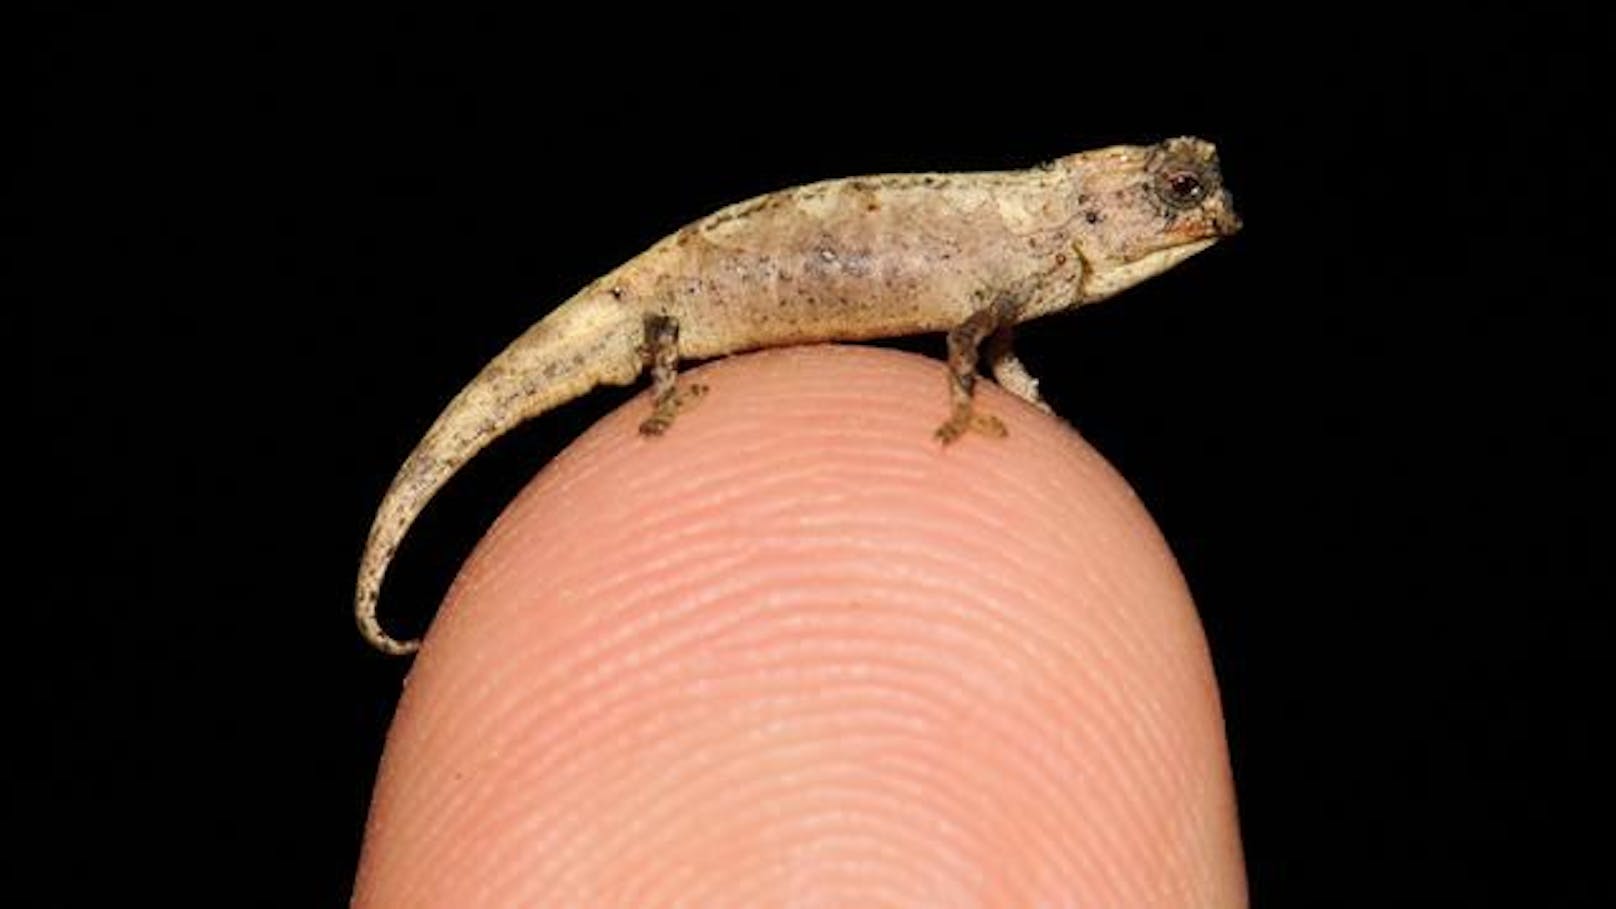 Mit einer Körperlänge von 13,5 mm ist dieses Nano-Chamäleon (Brookesia nana) das kleinste bekannte Männchen unter den fast 11.500 bekannten Reptilienarten.